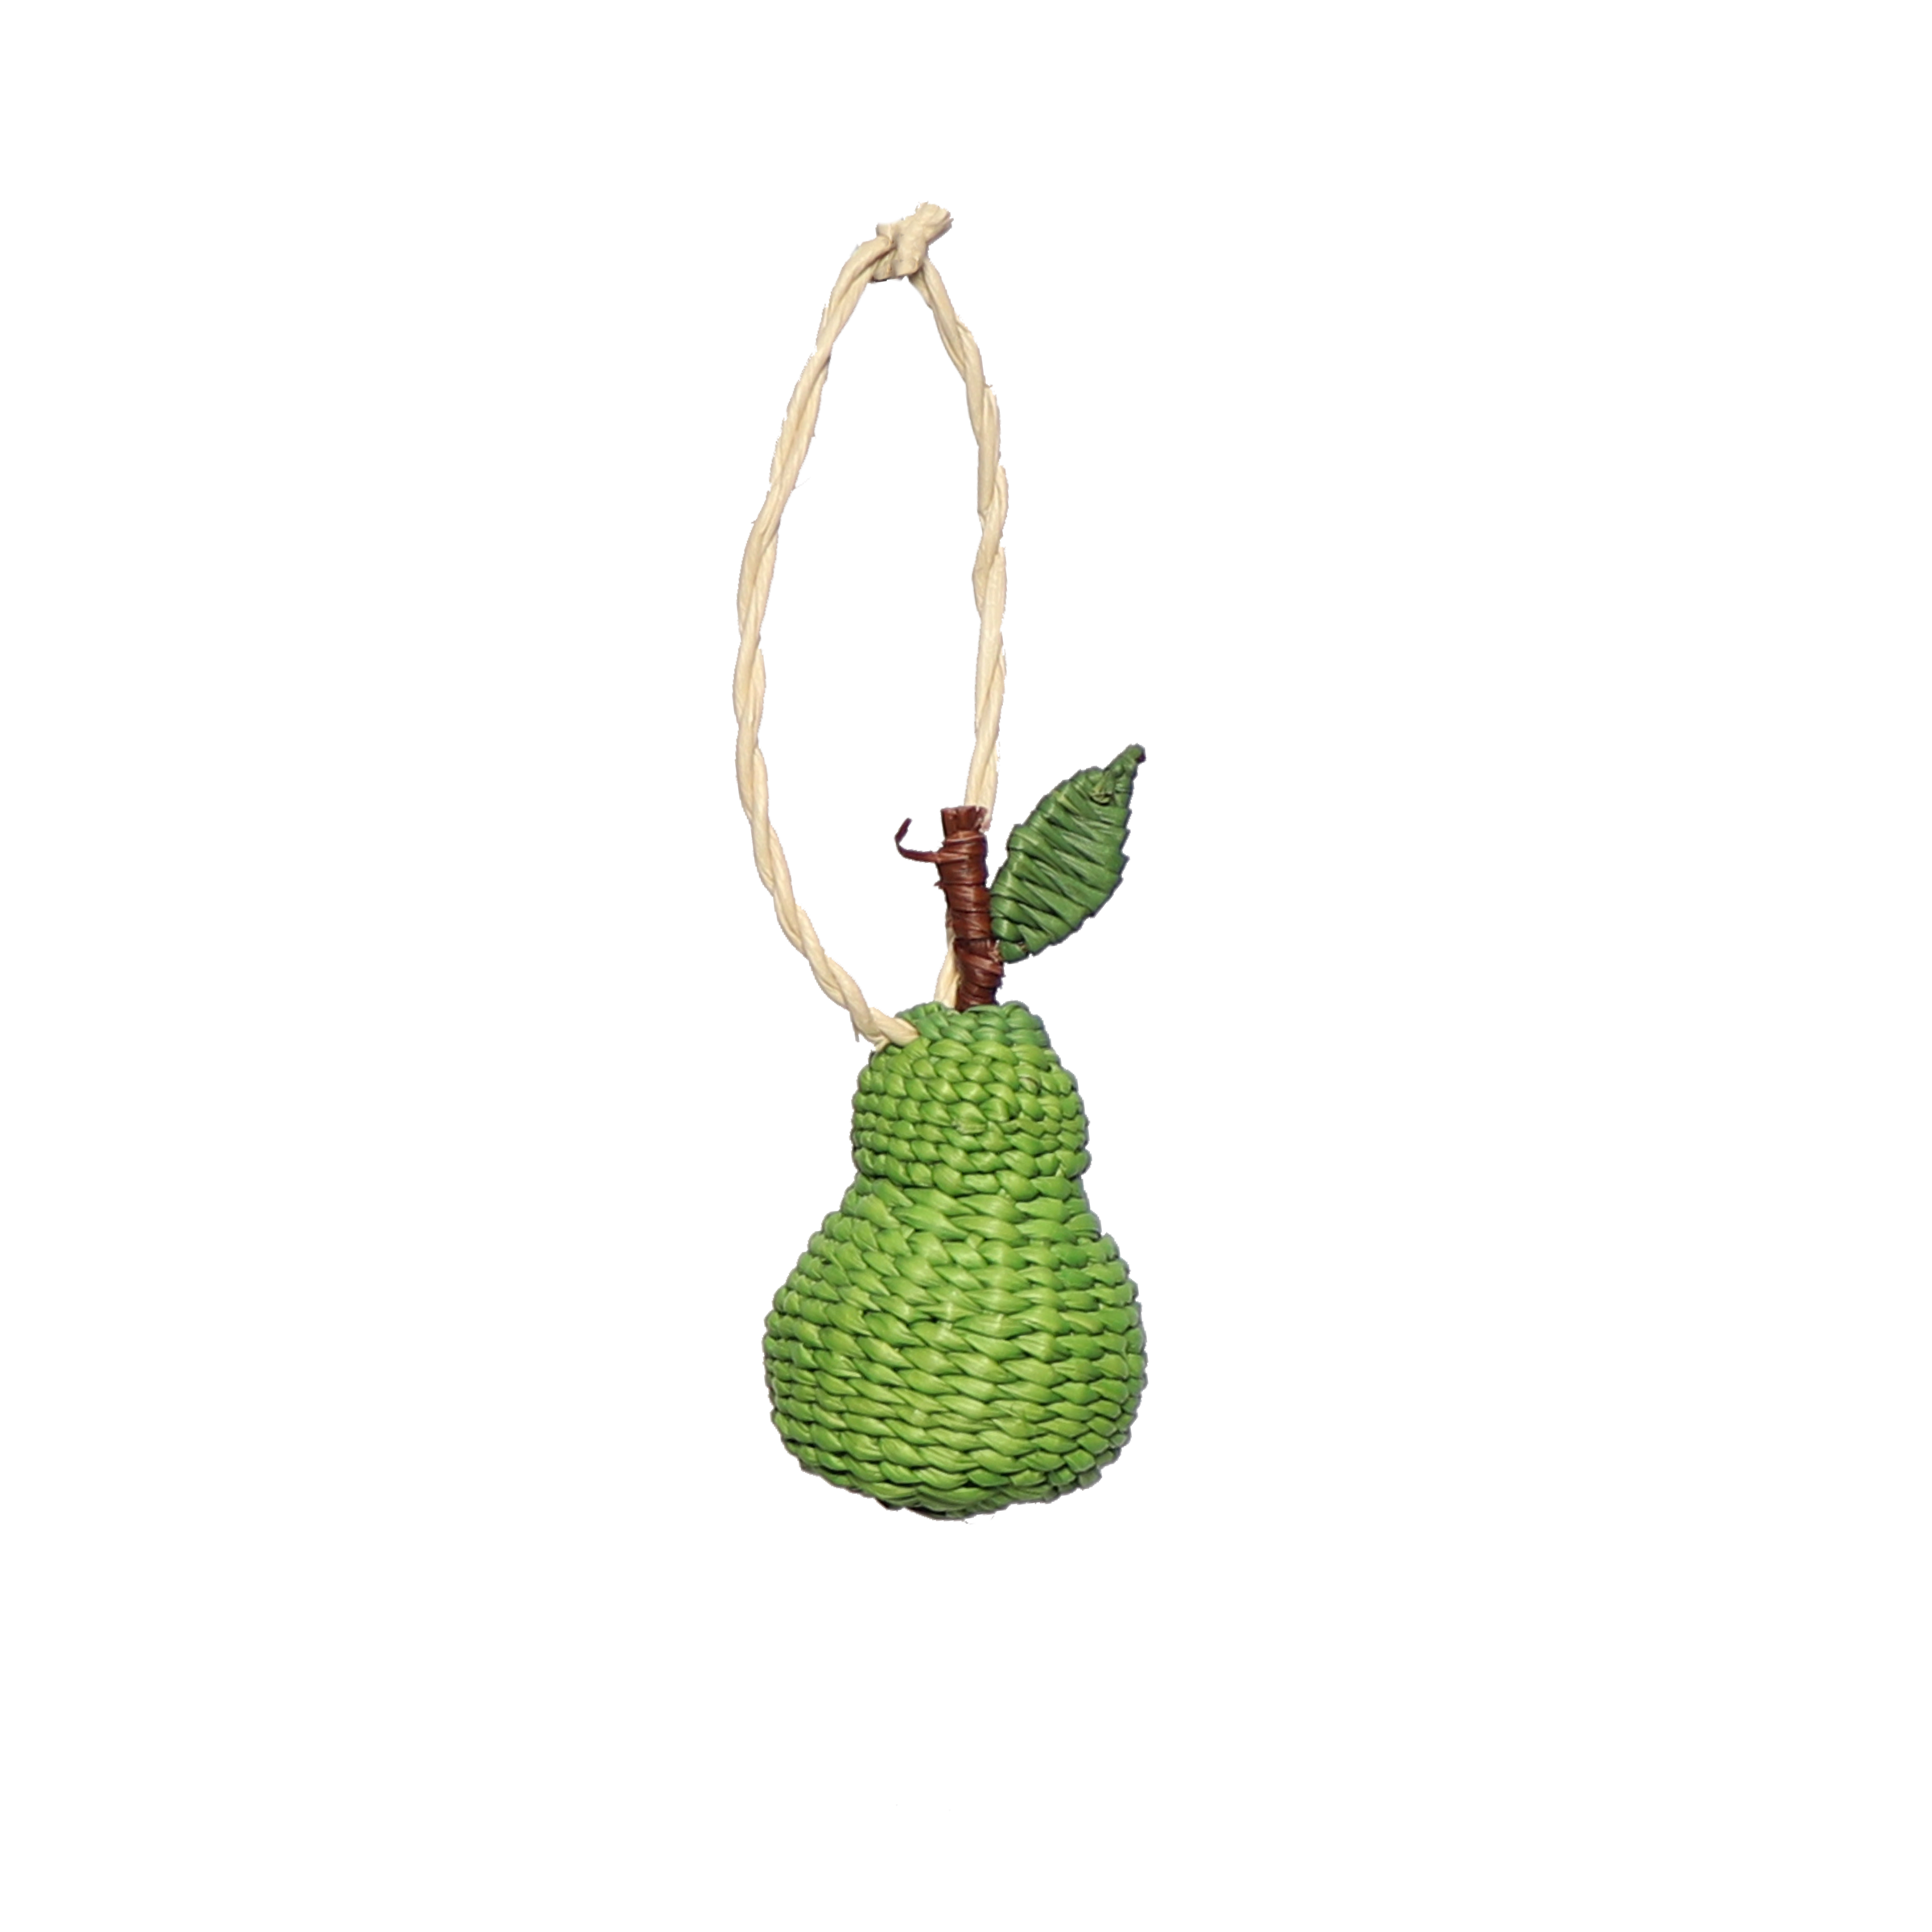 Woven Fruit Pear Decoration, 7cm